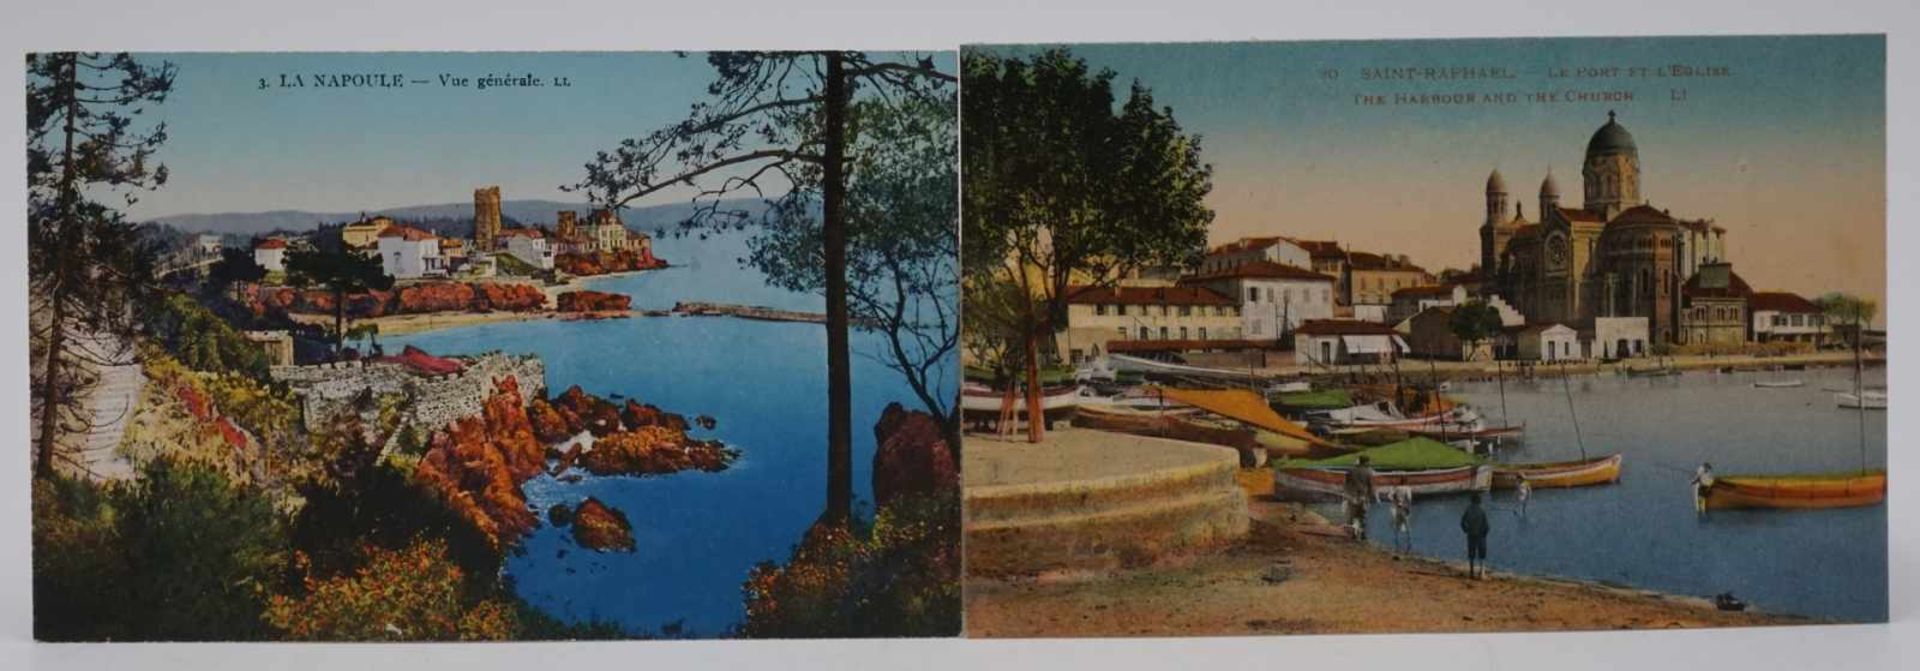 235 Ansichtskarten Südfrankreich und Norditalien, 1926alle im Schutzumschlag mit Datum und - Bild 2 aus 4